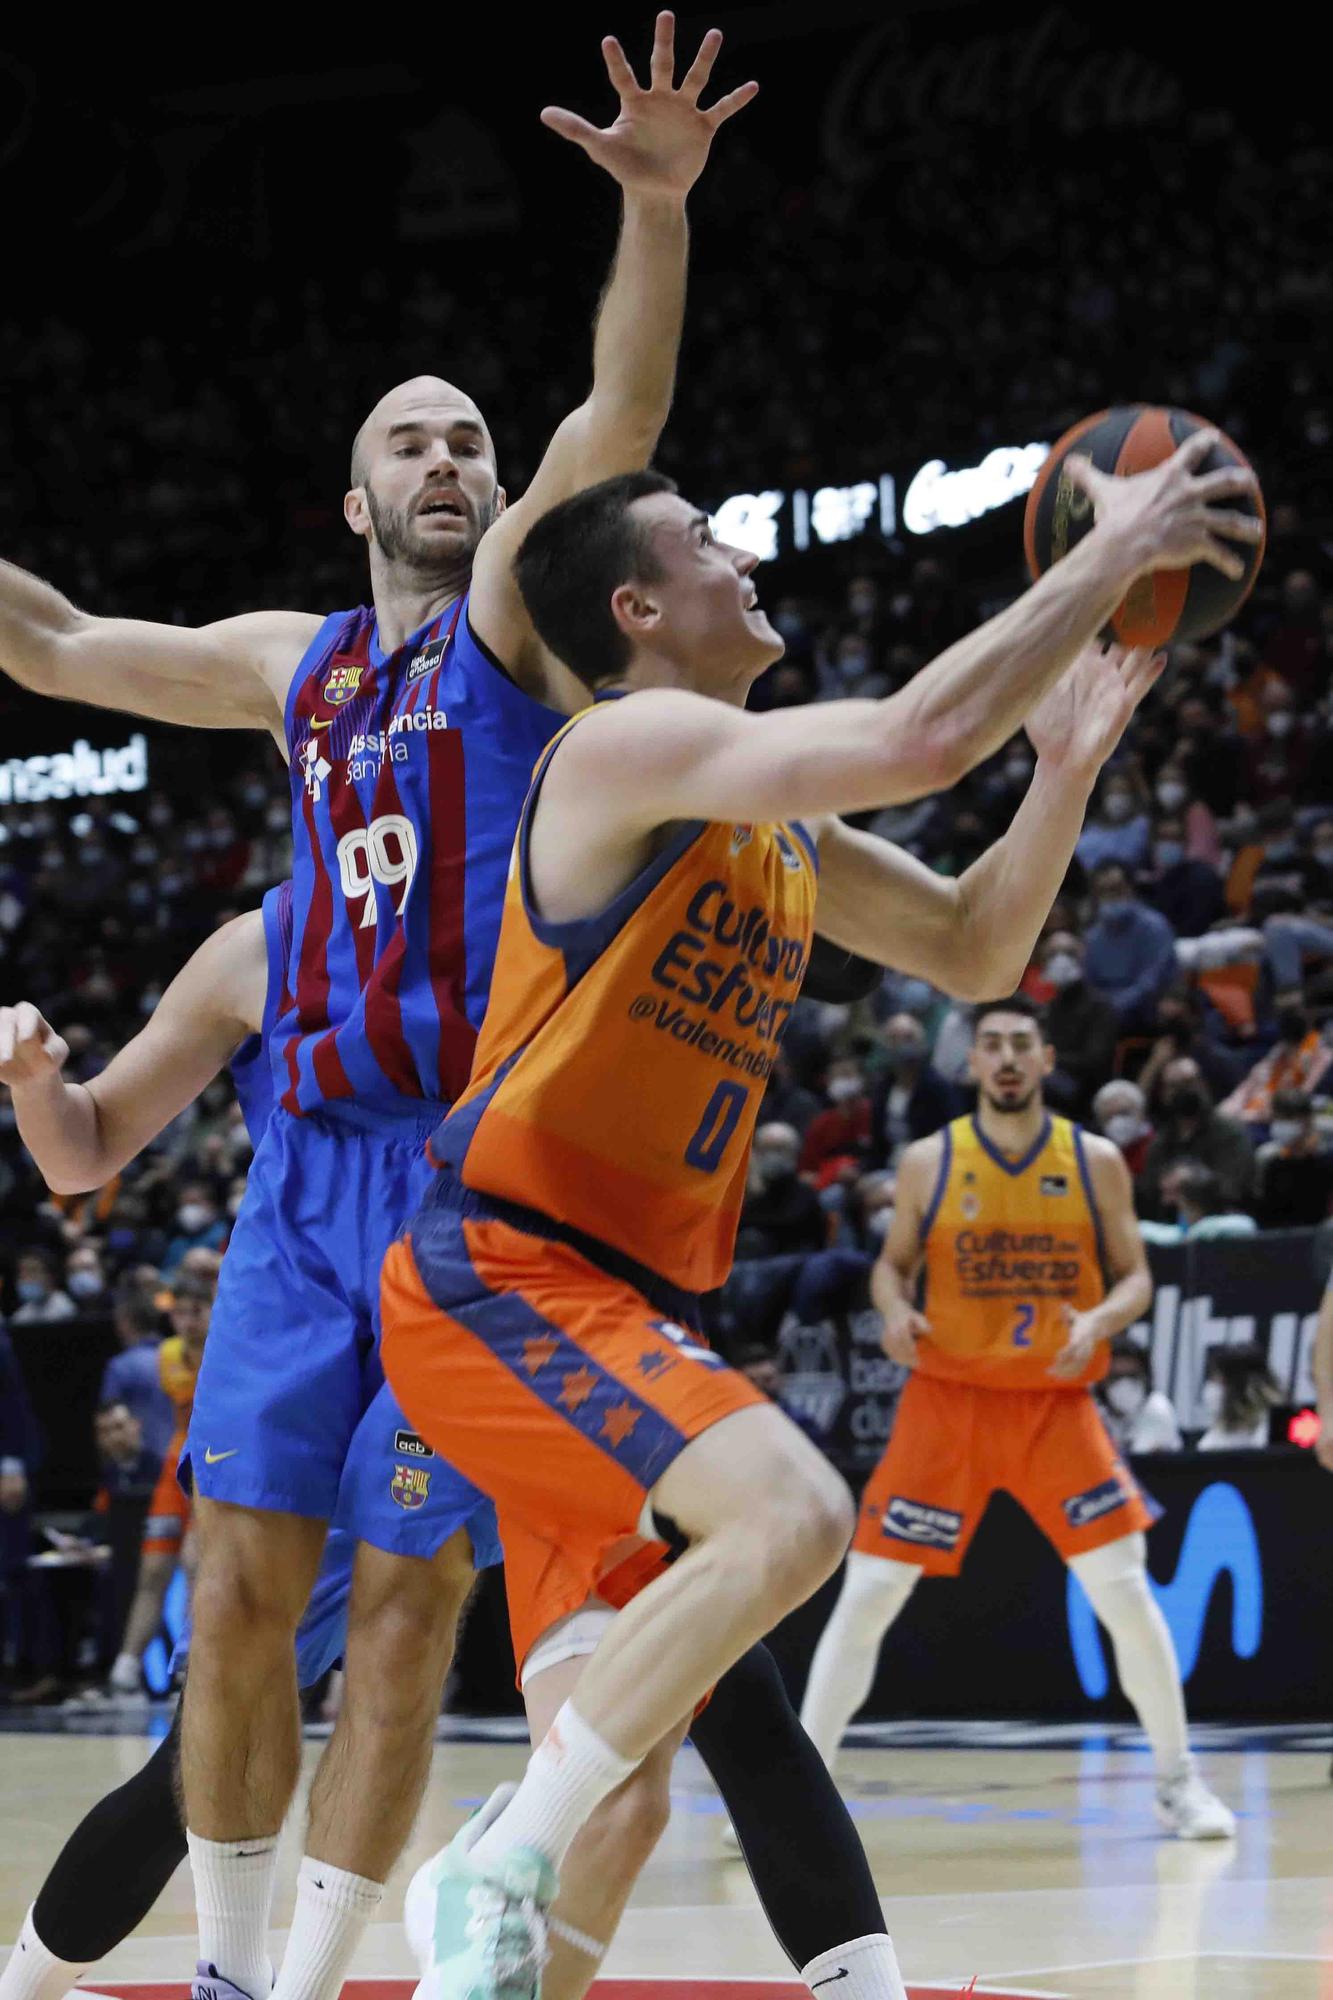 Partido Valencia Basket- Barcelona